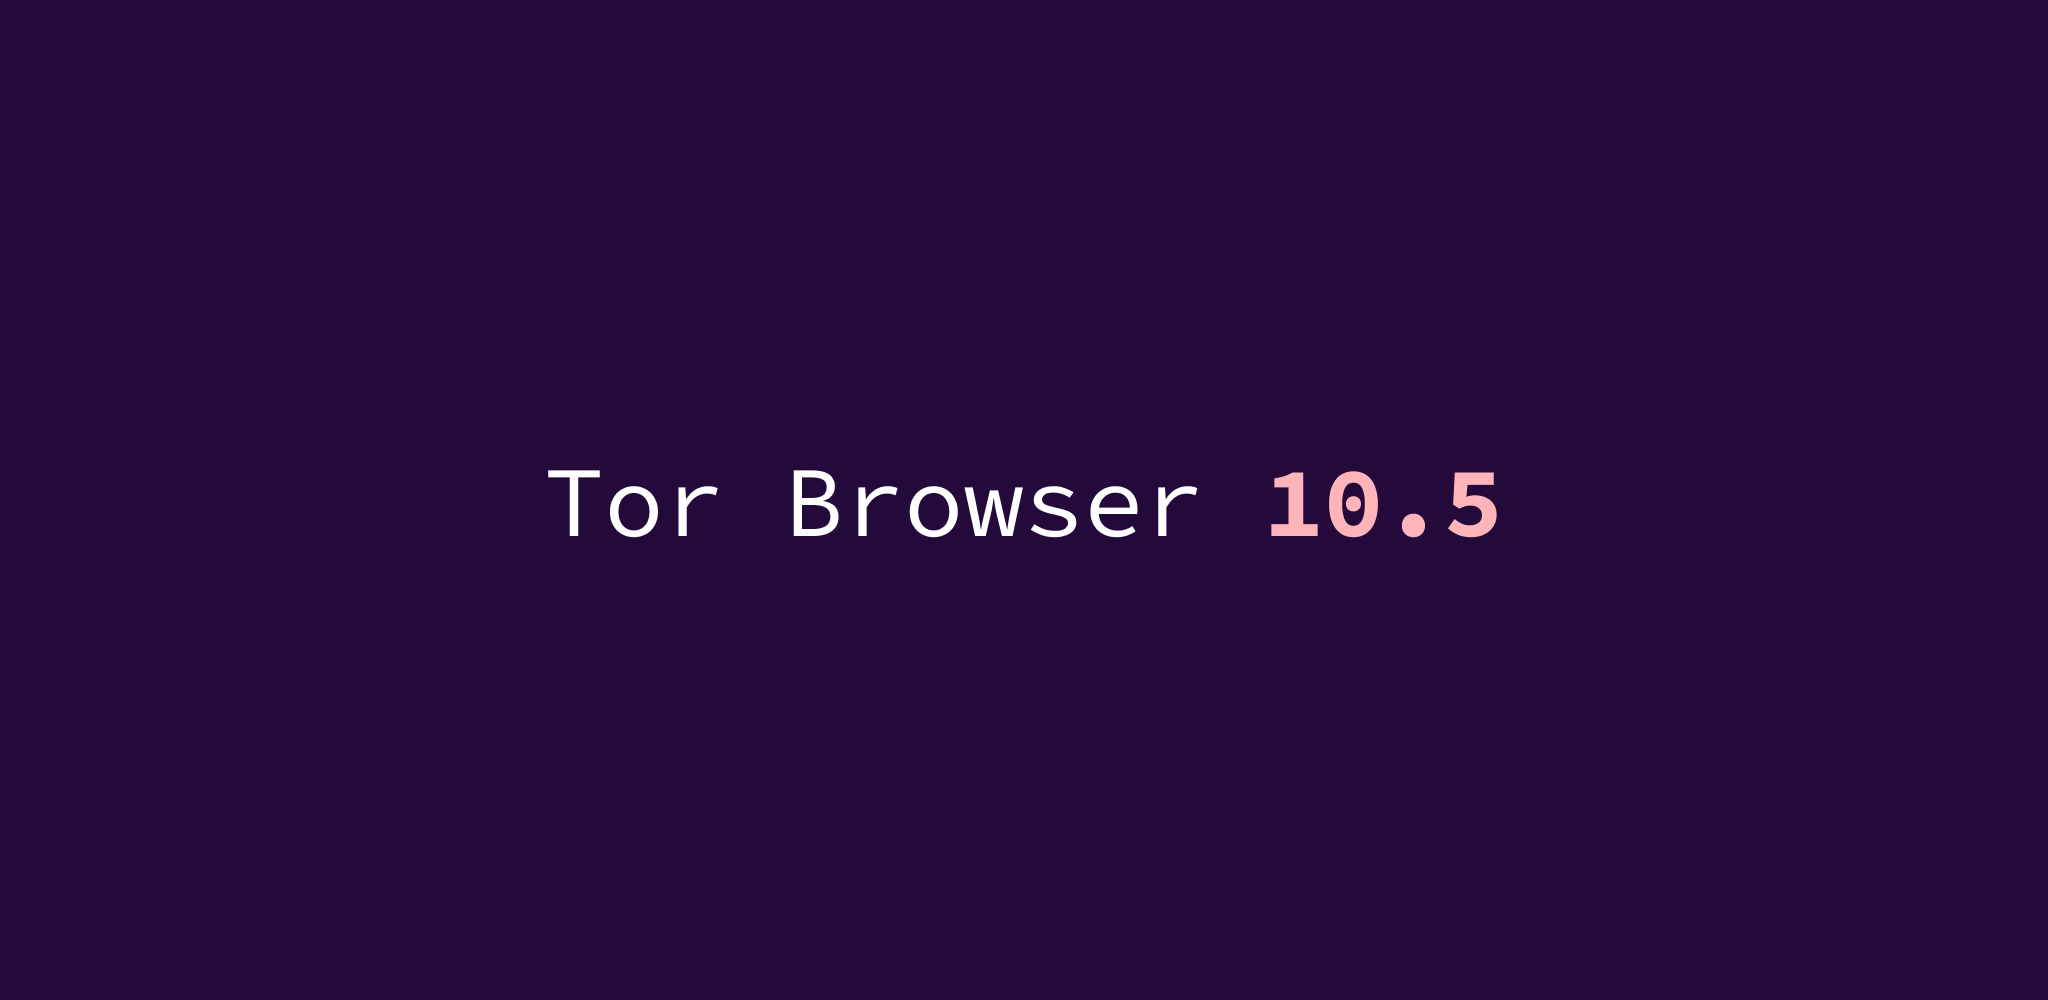 Tor browser bundle exe mega tor browser windows mobile 10 mega